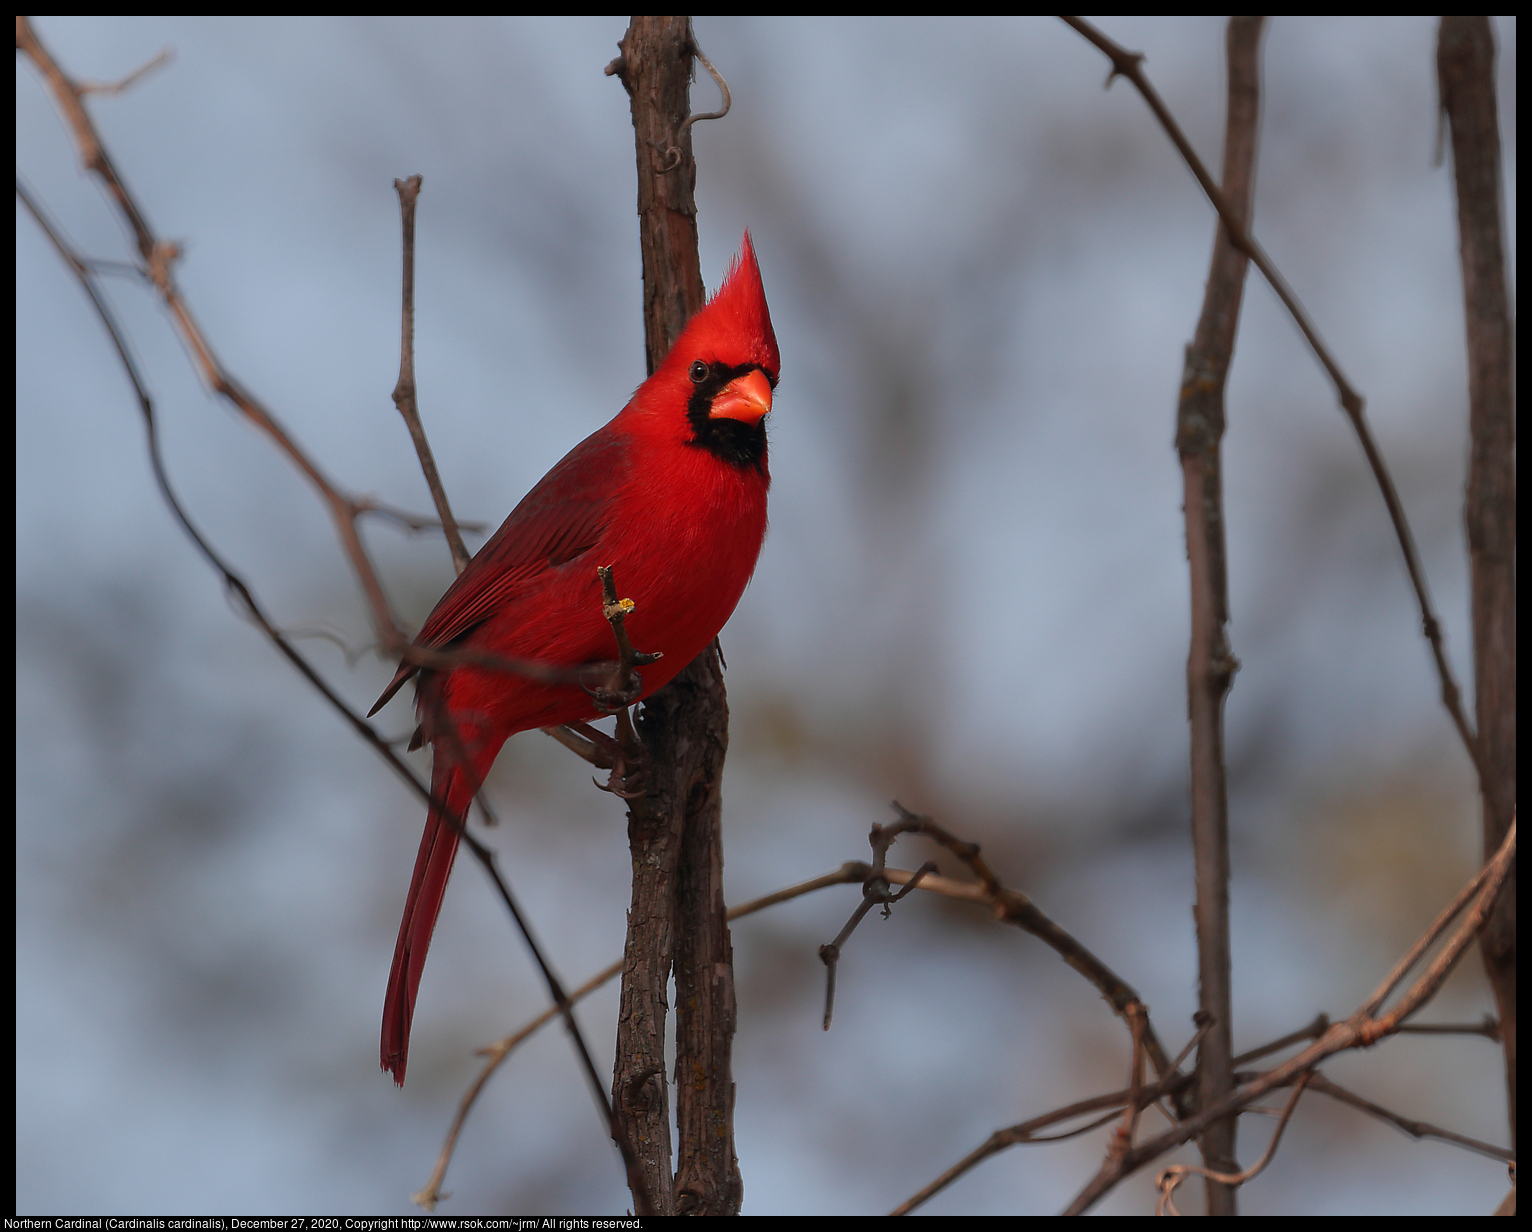 Northern Cardinal (Cardinalis cardinalis), December 27, 2020